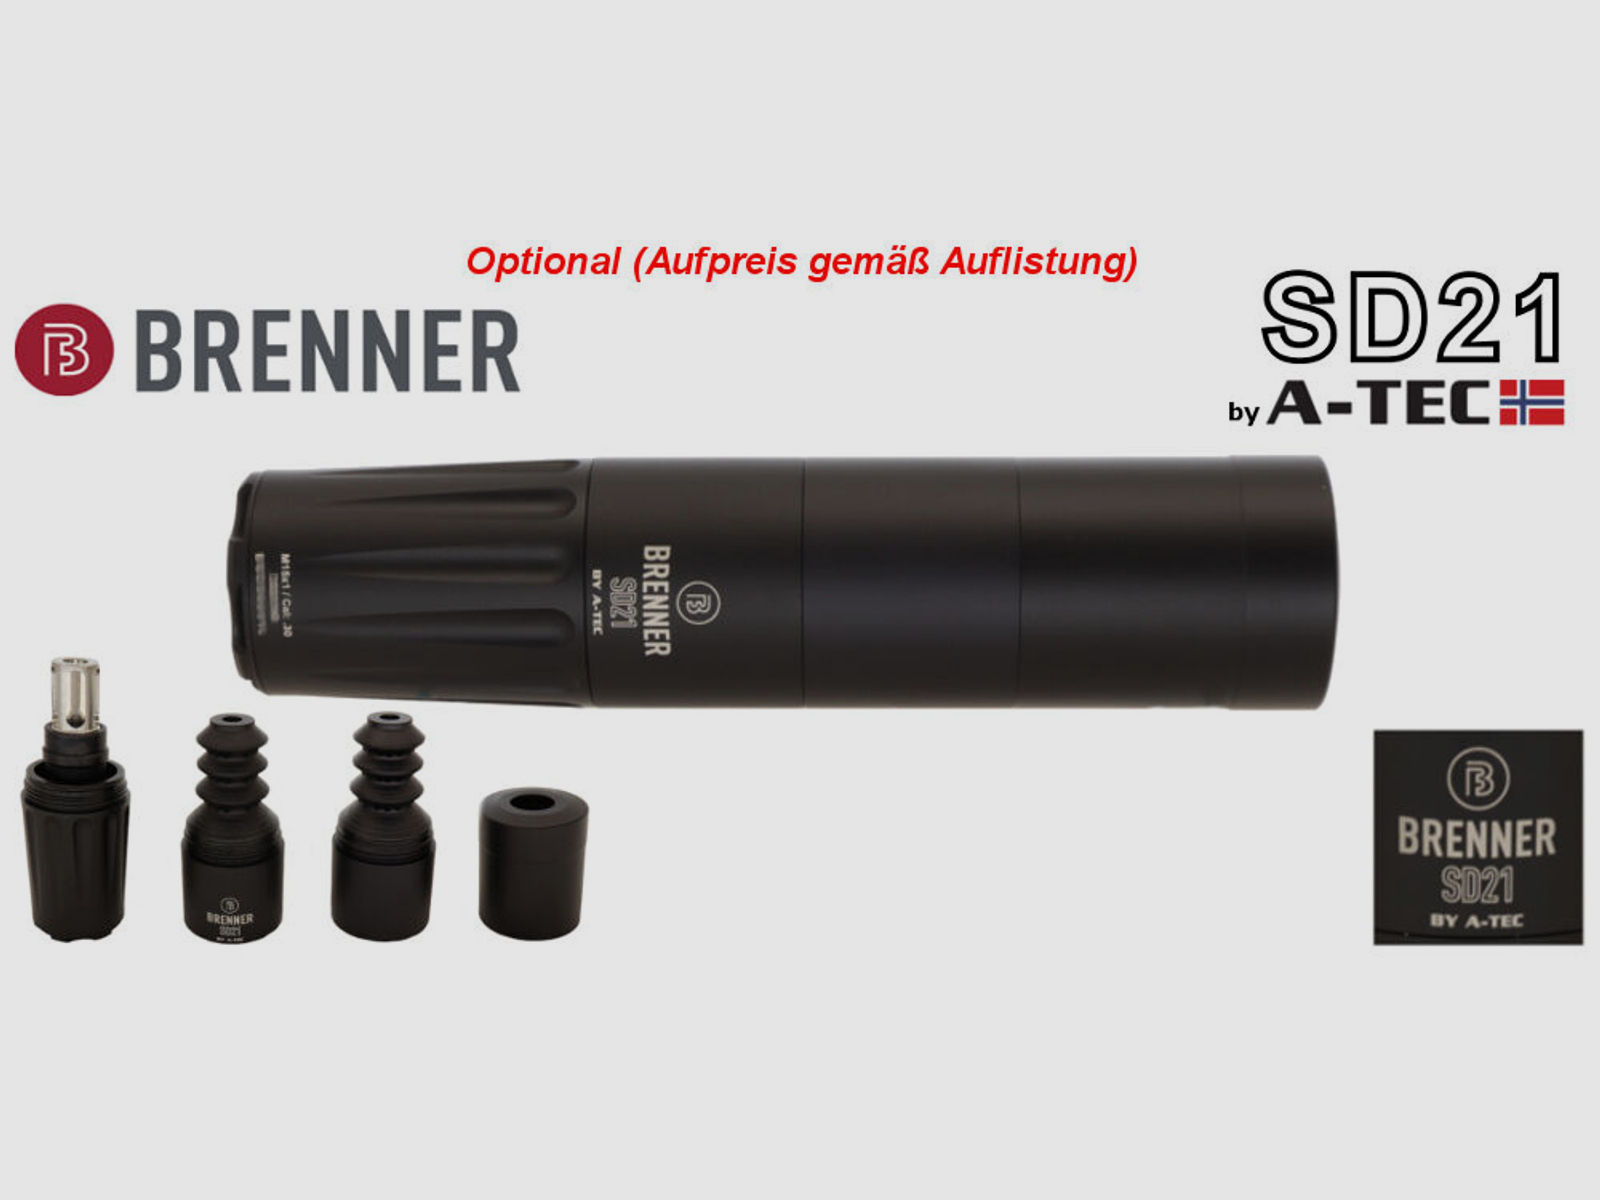 Brenner Komplettpaket:	 Brenner BR 20 Polymer mit ZF Steiner Ranger 3-12x56 fertig montiert